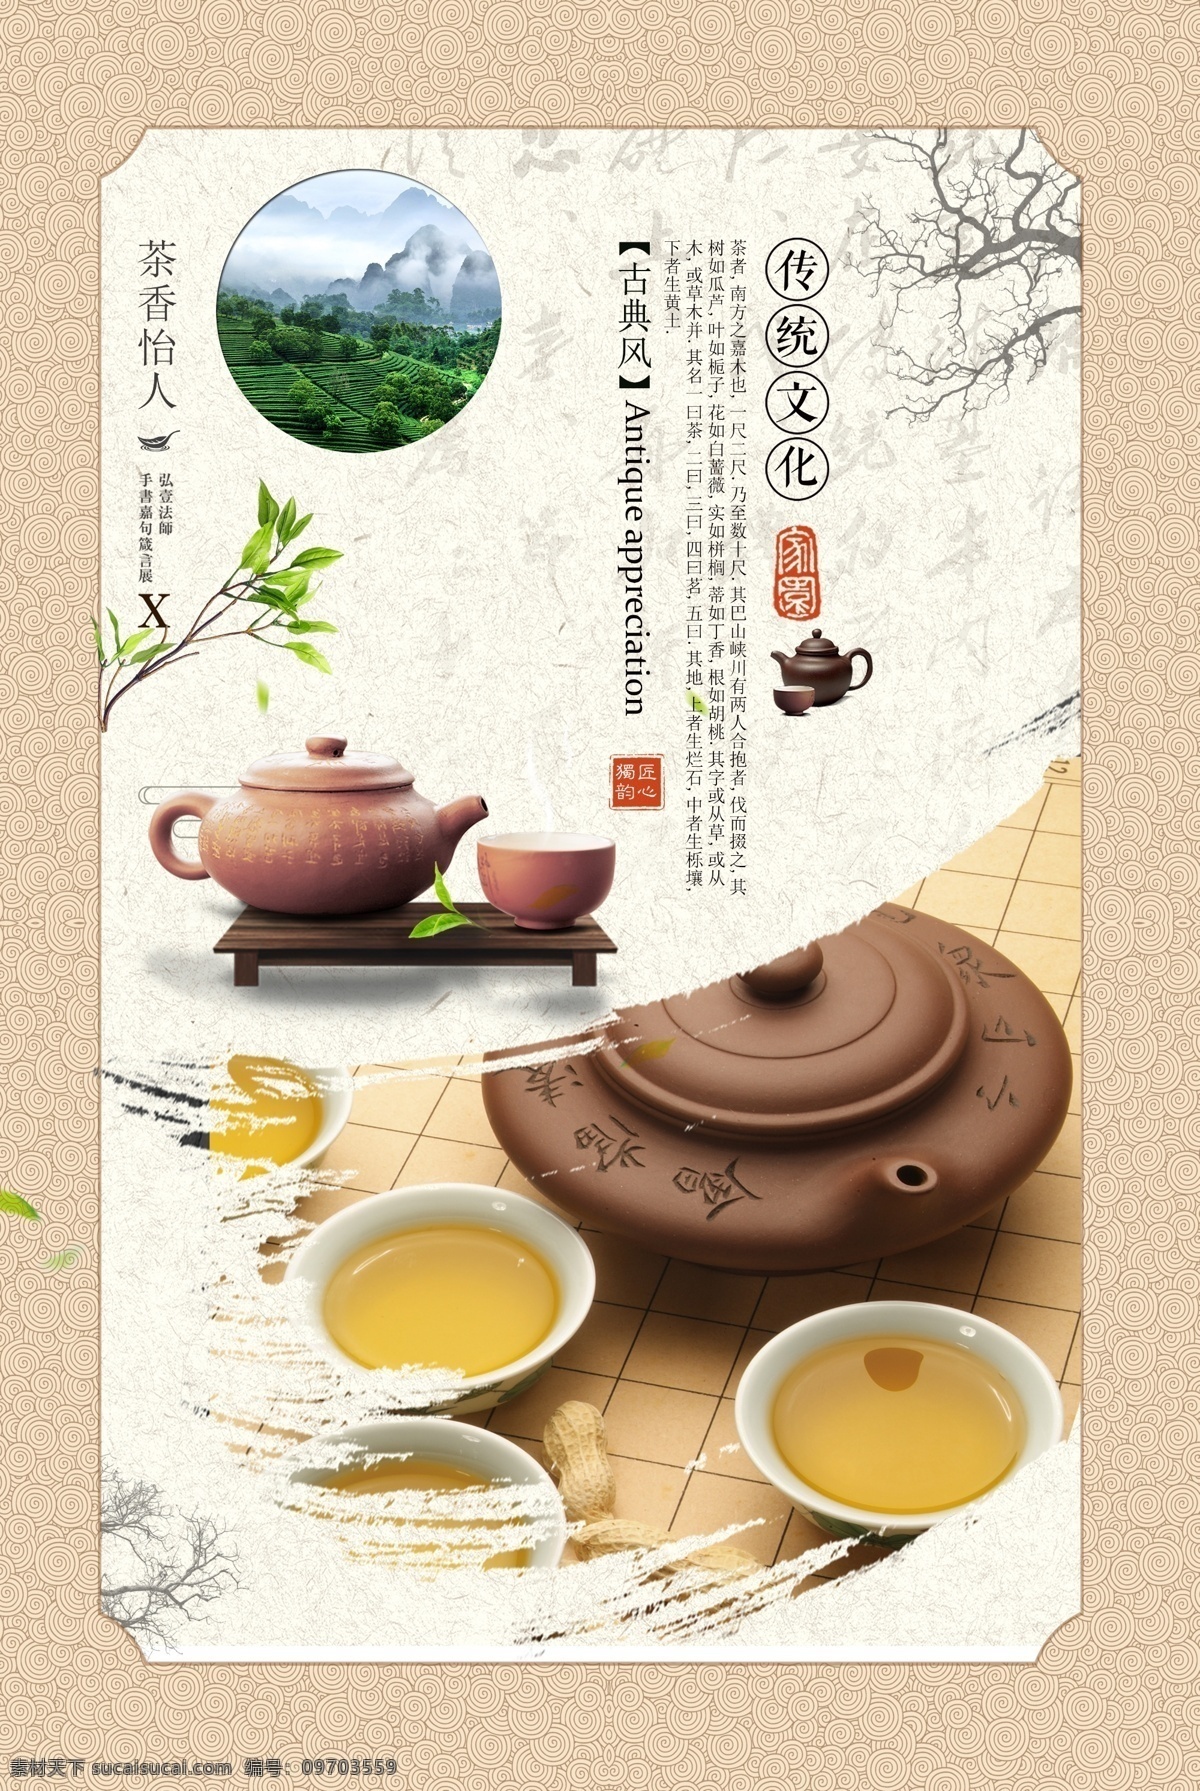 中国 茶文化 中国茶 传统文化 茶道 茶 中华文化 茶道人生 分层